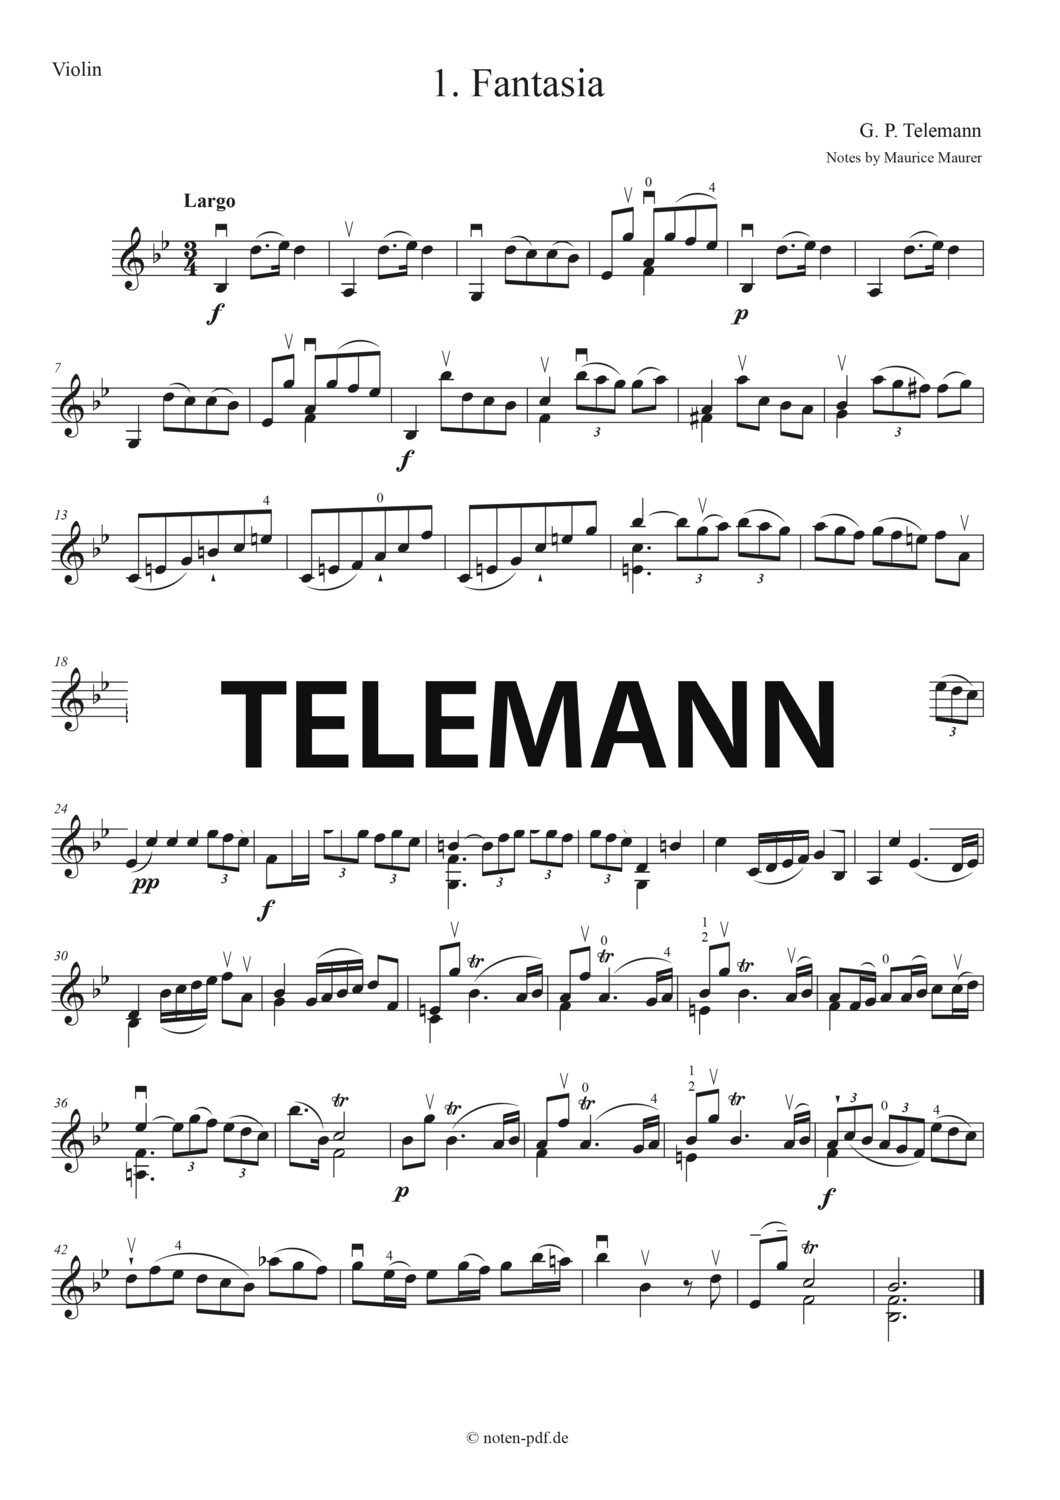 Telemann: 1. Fantasia 1. Mov.